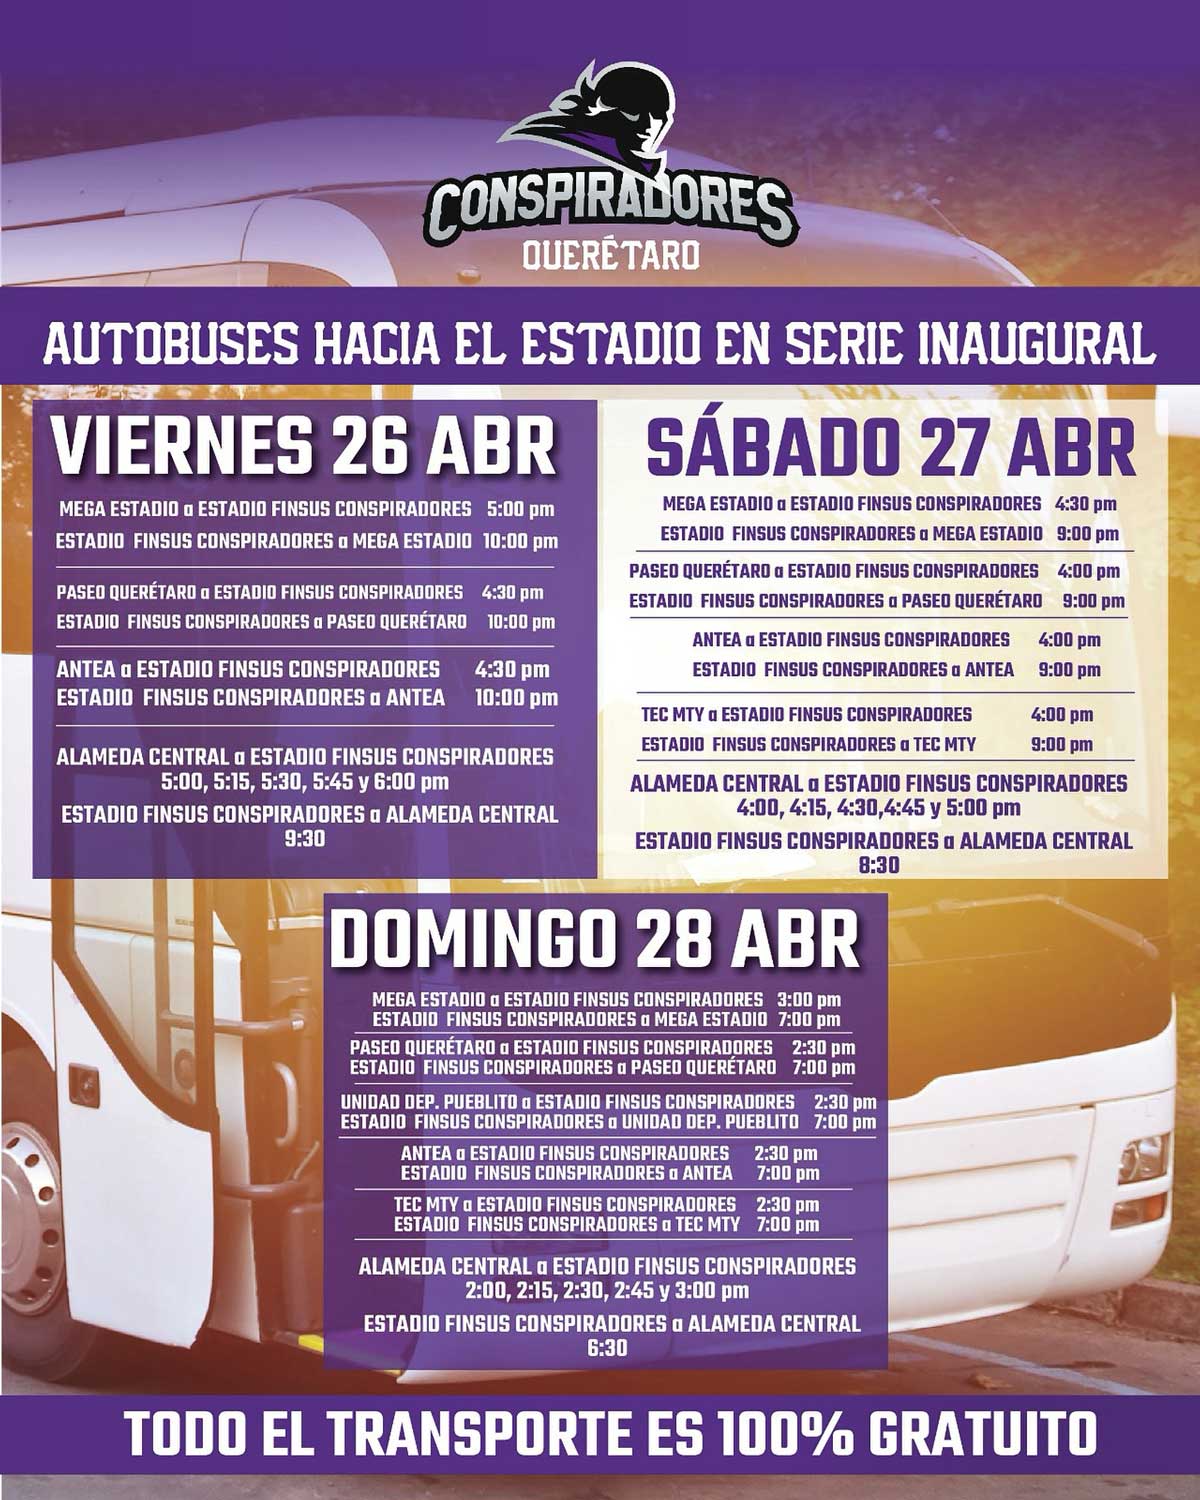 Rutas gratuitas al Estadio Conspiradores de Querétaro por serie inaugural